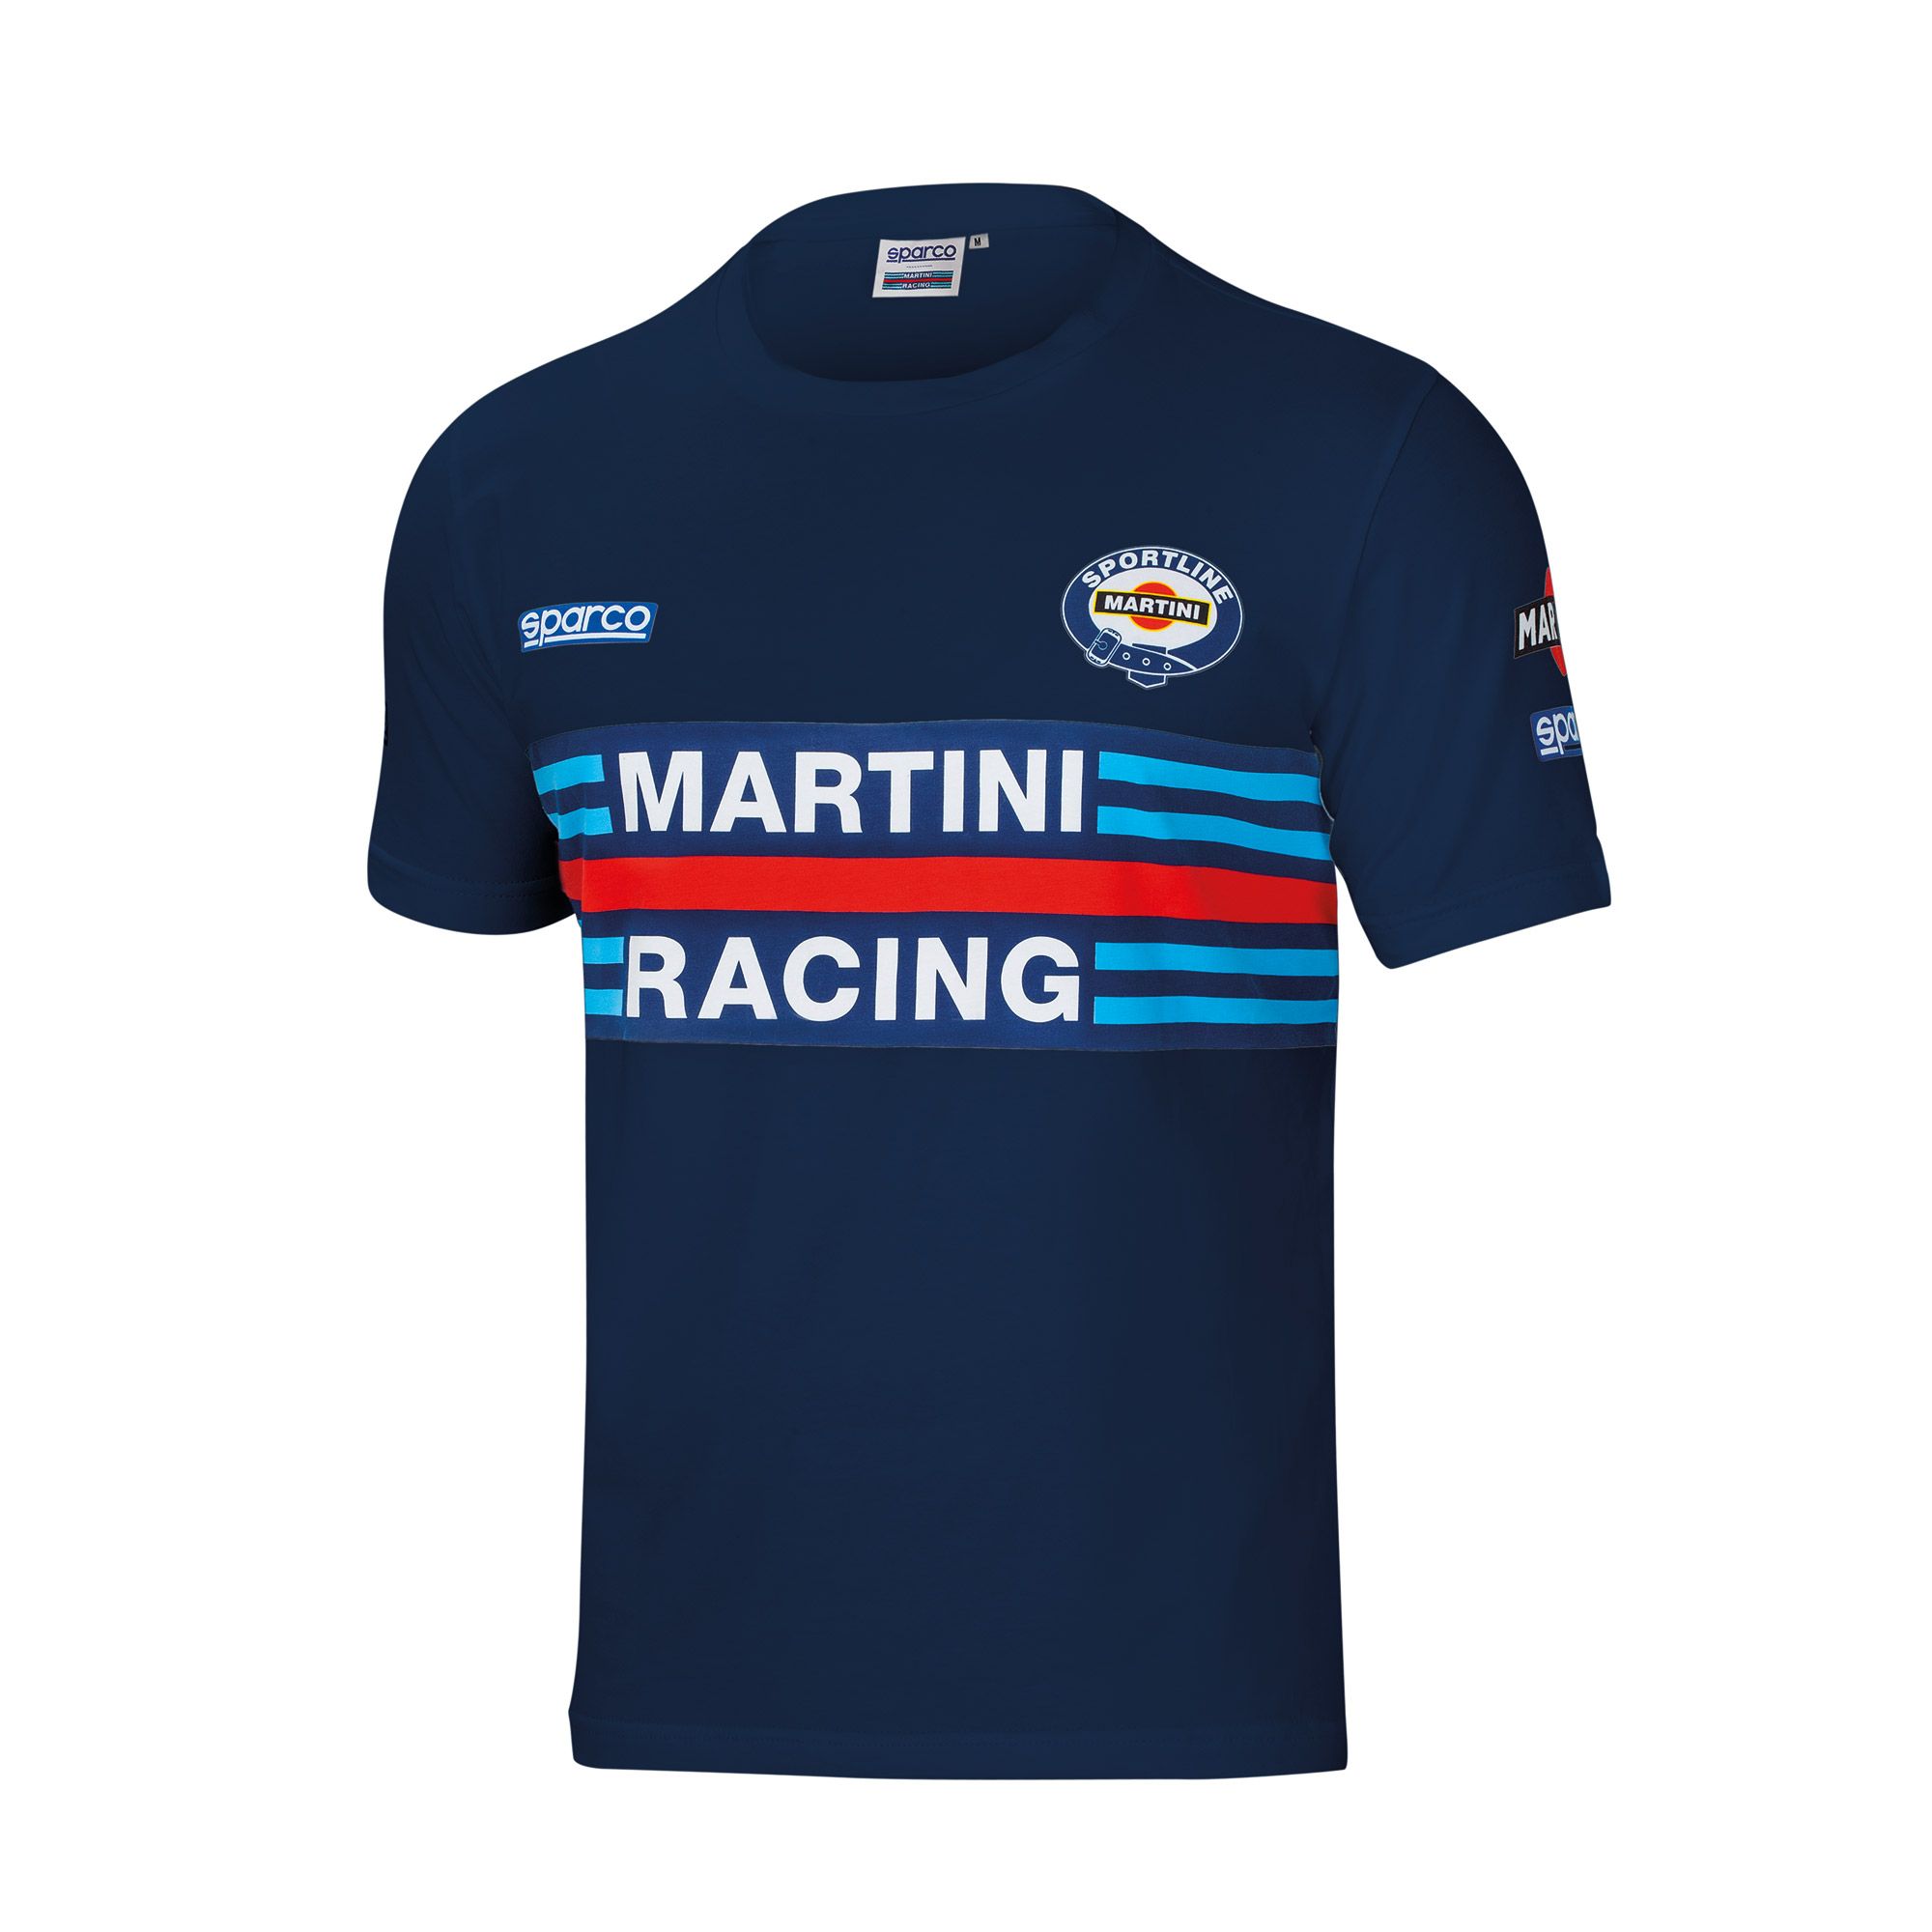 Sparco MARTINI RACING футболка, темно-синий, р-р L - DARK-STOCK.RU